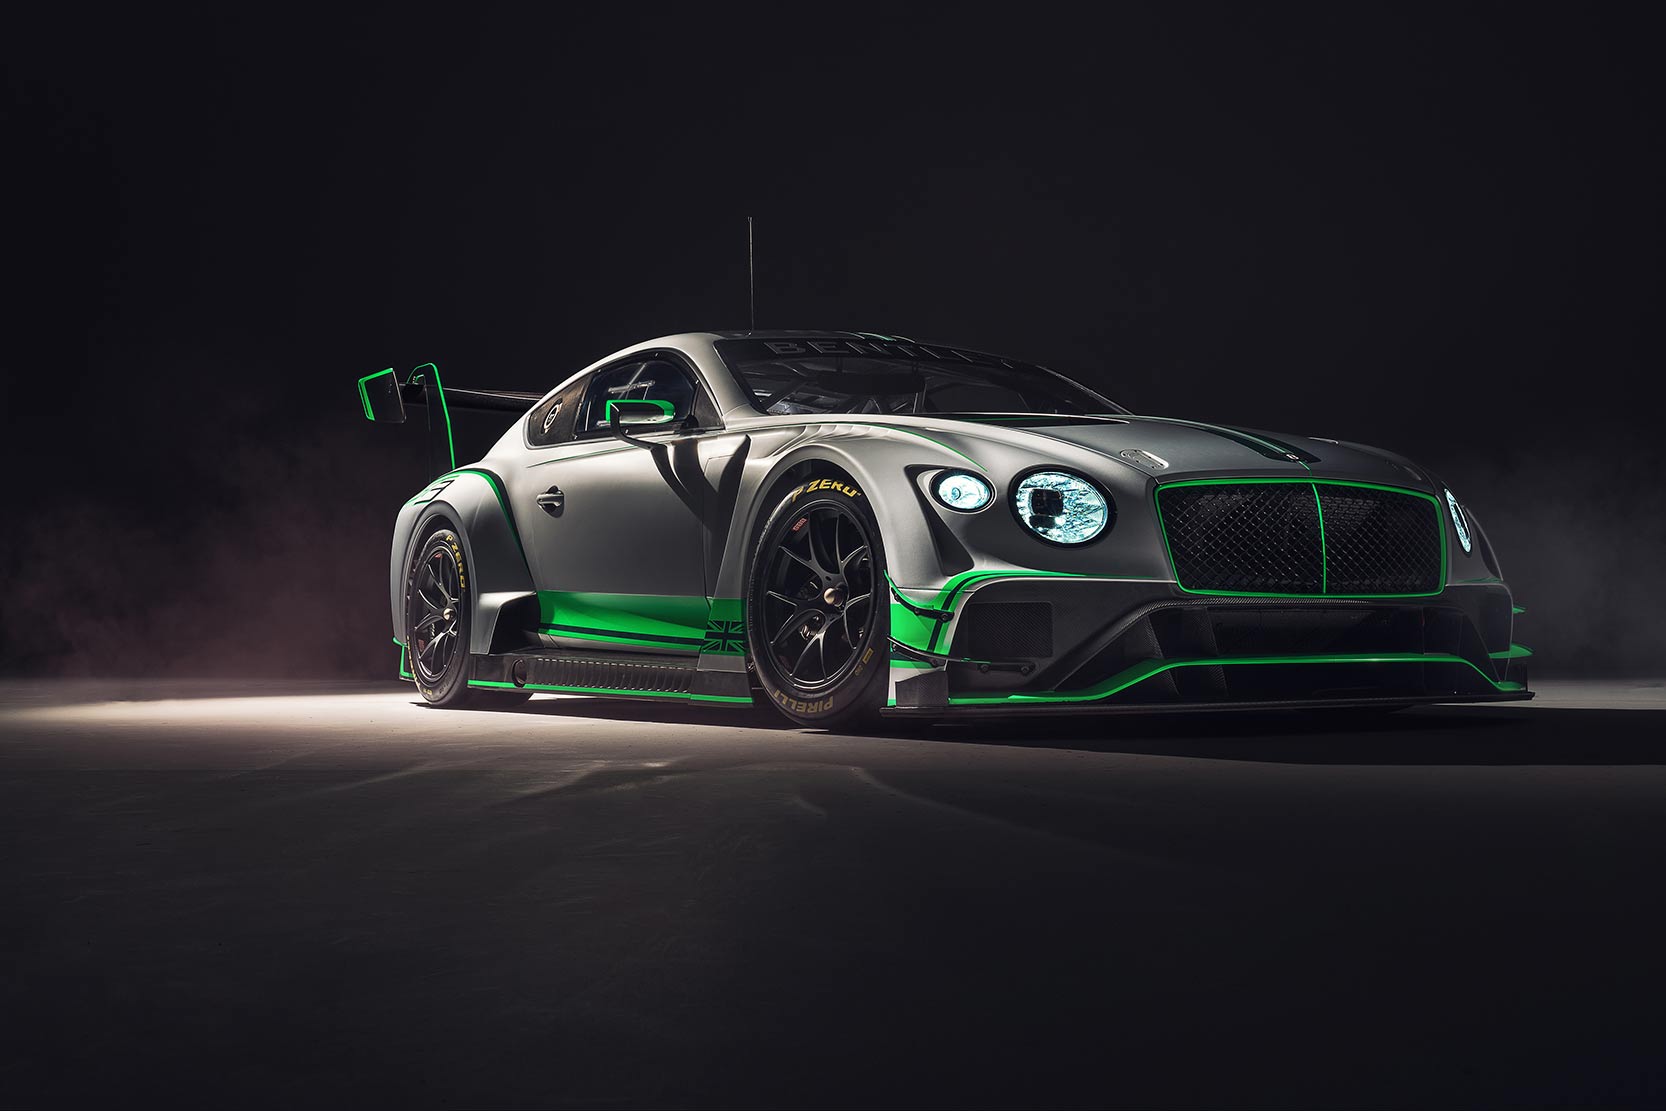 Image principale de l'actu: Bentley continental gt3 la version de 2018 